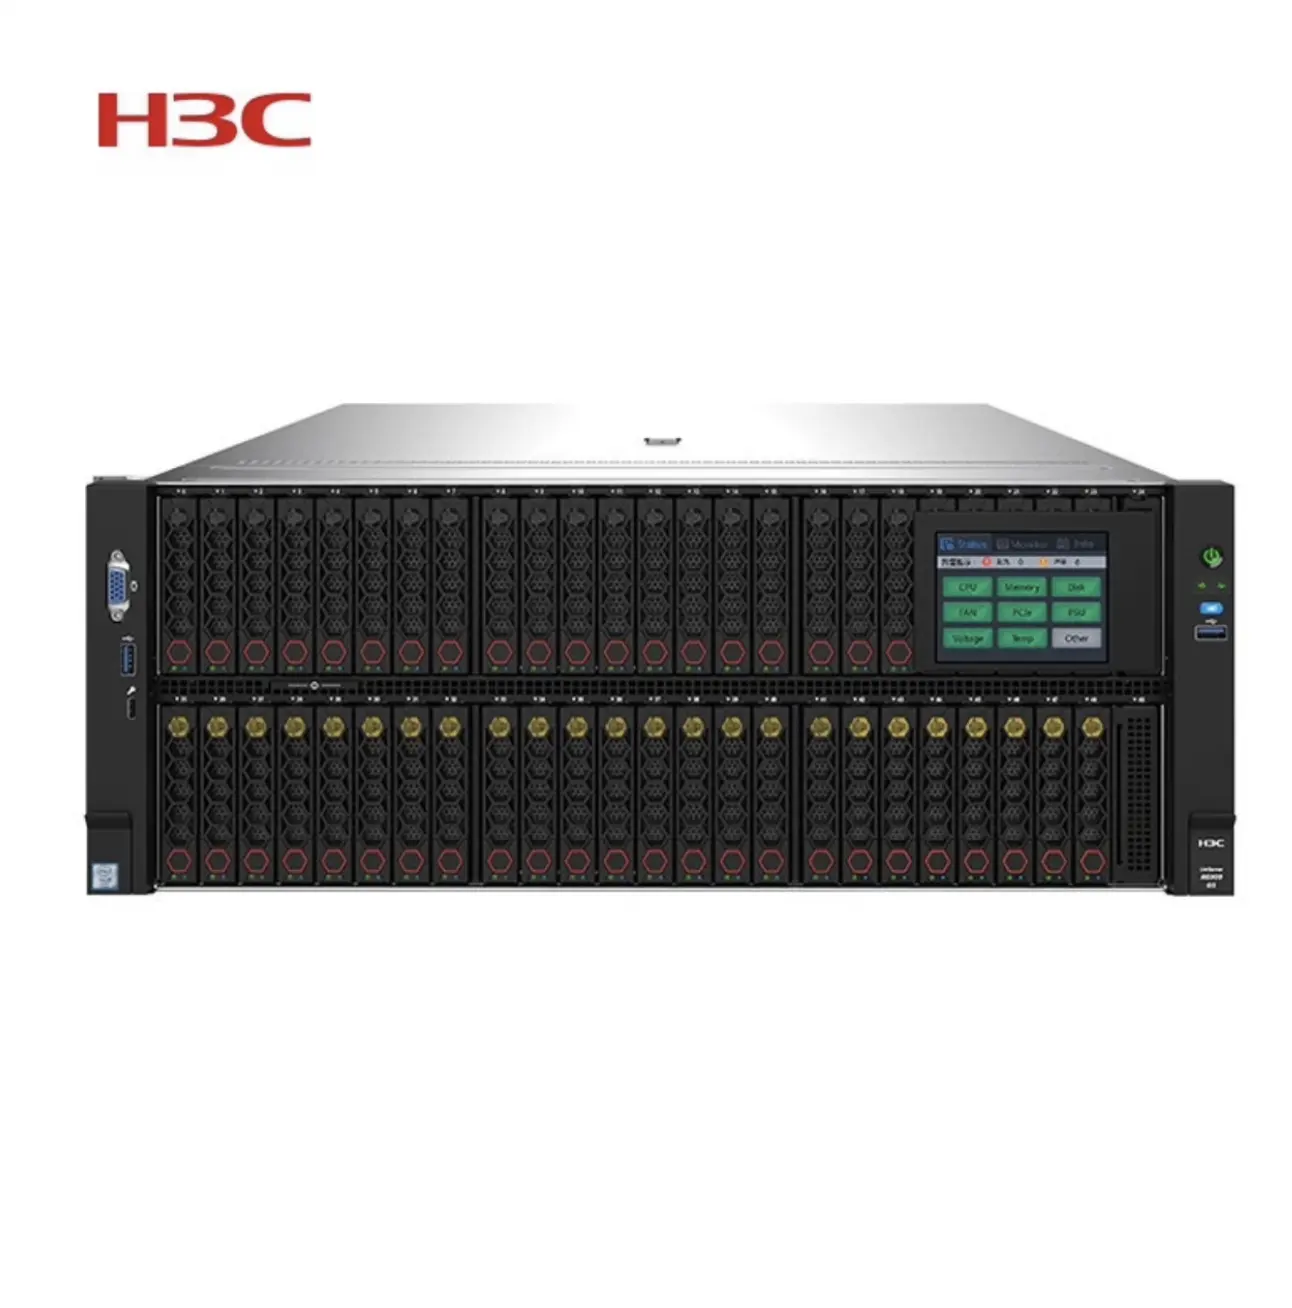 R4900G5 R4700G5 R5300G5 R6900G5 Server H3C Rack Server Win2019 Cheap H3C R4900G5